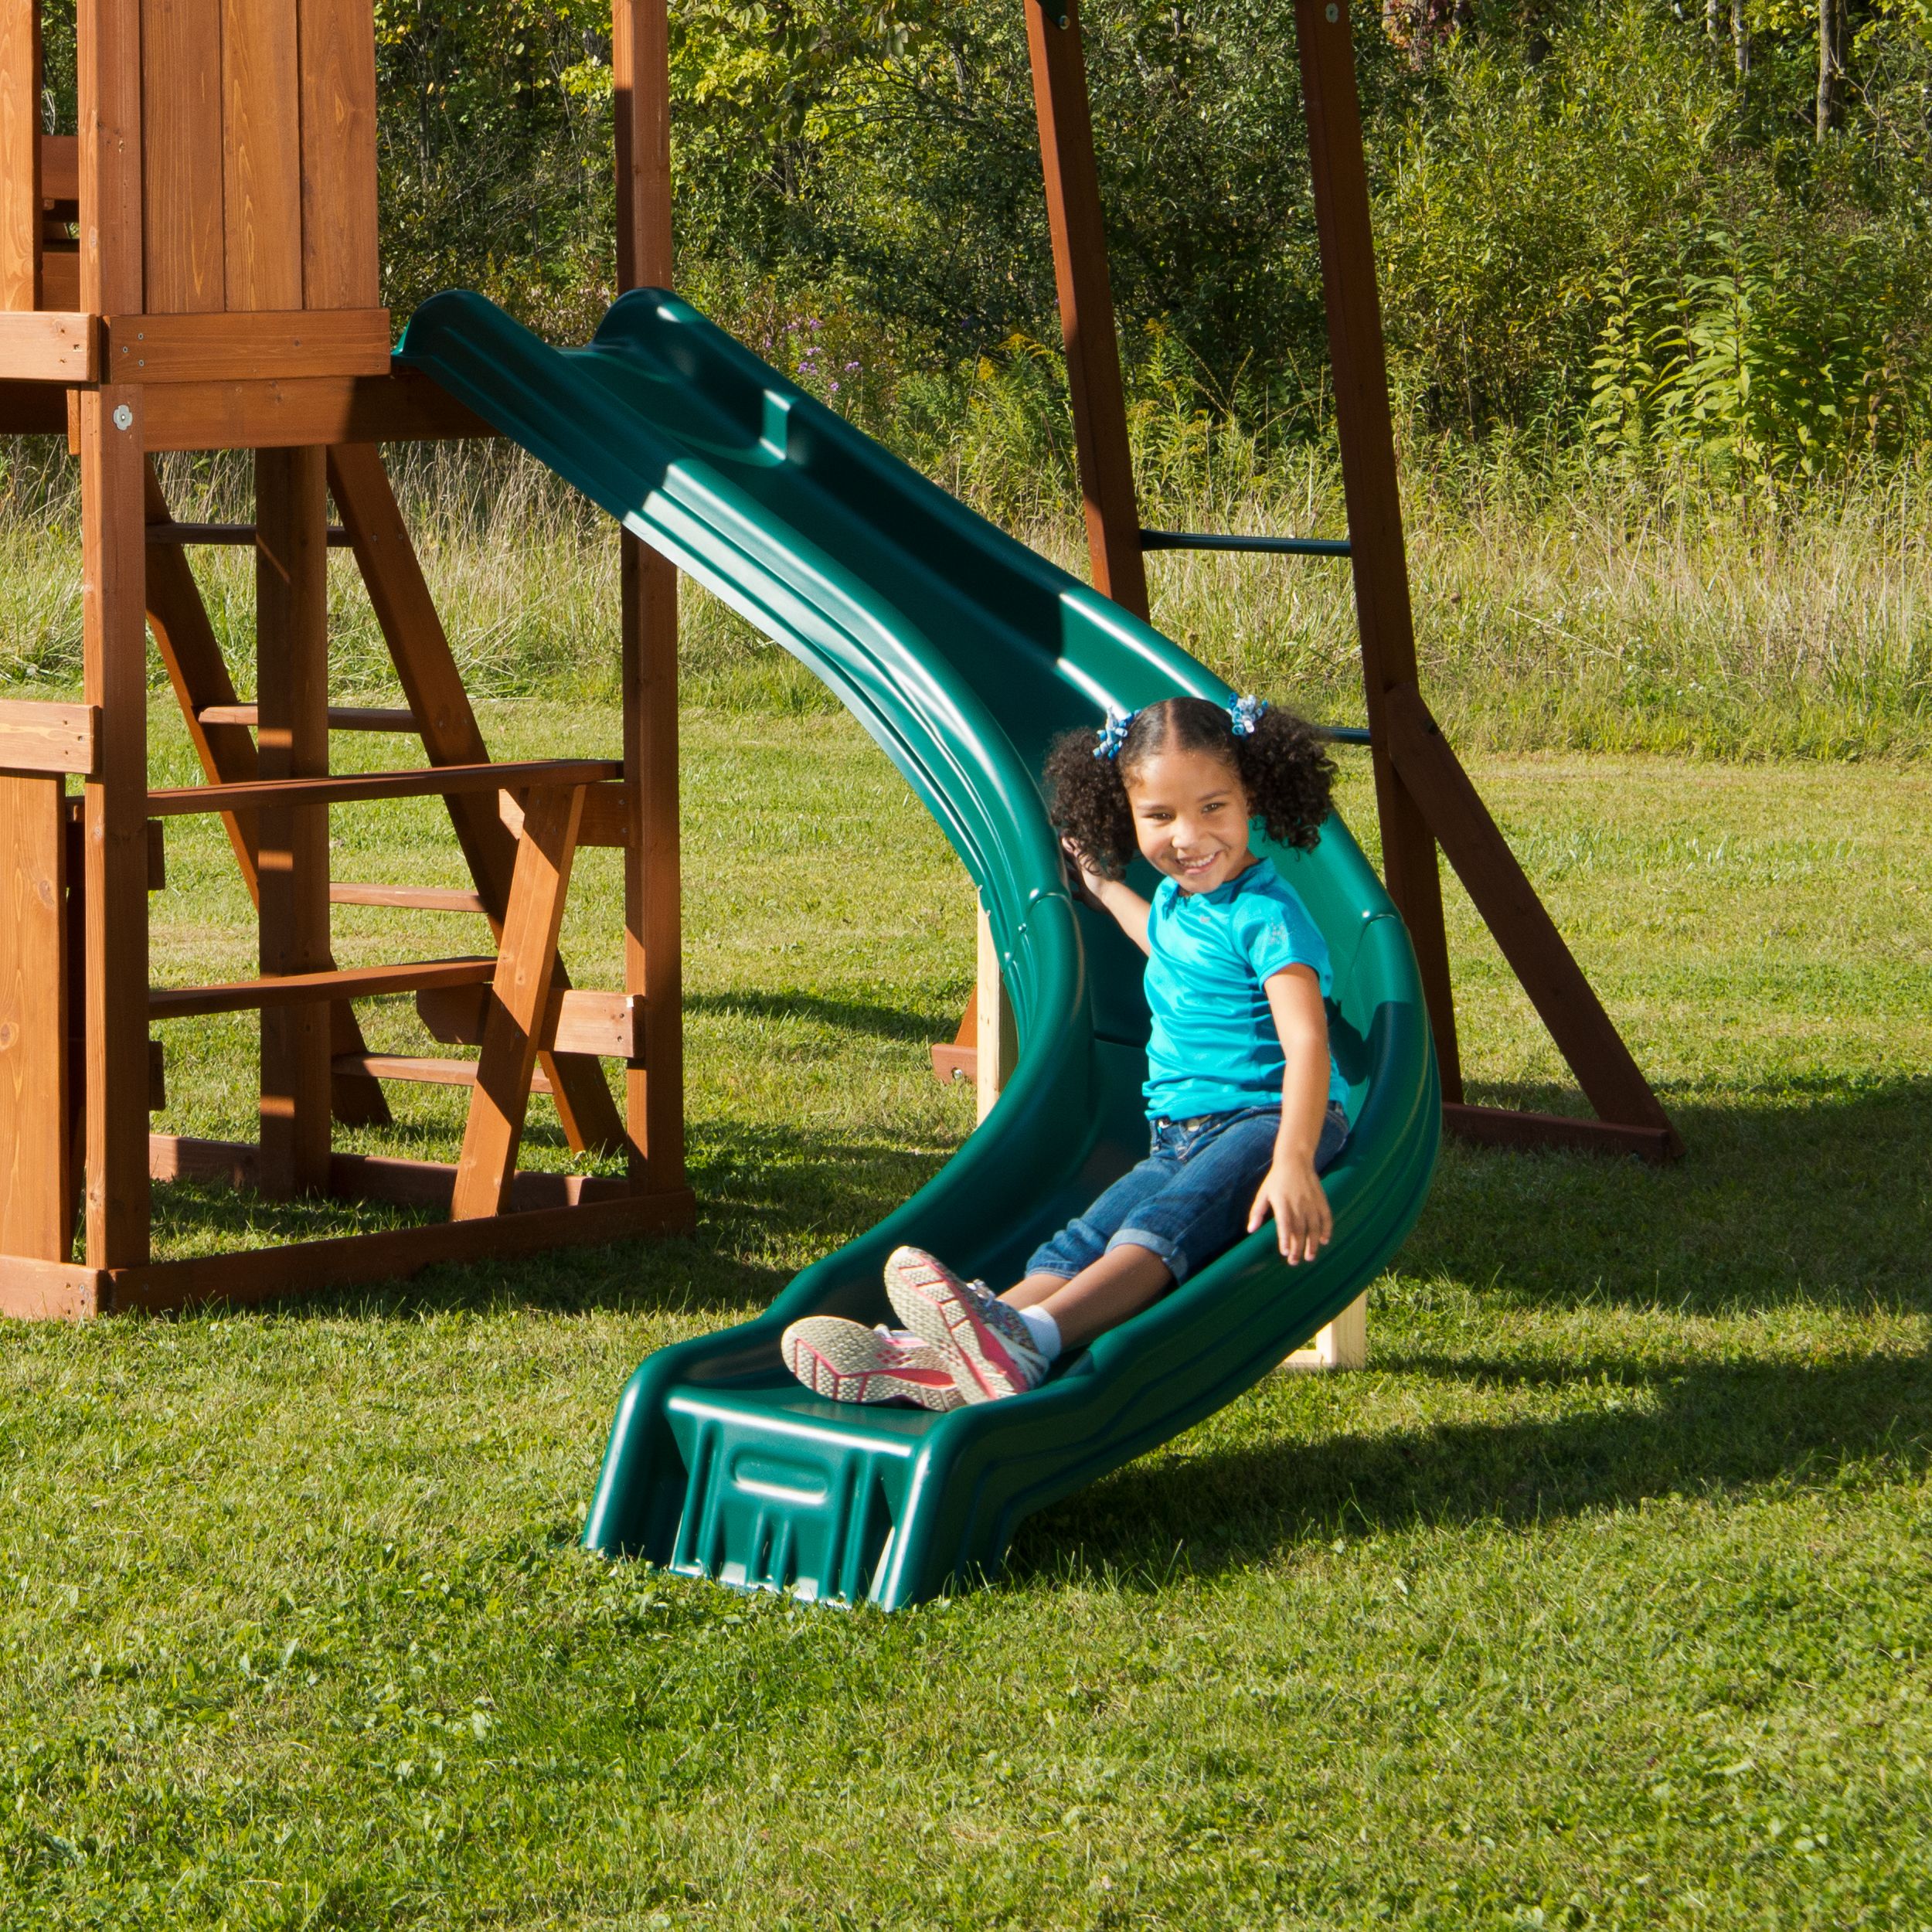 Swing-N-Slide Cedar Brook Wooden Backyard Play Set with Monkey Bars, Swings, and Curved Slide - image 5 of 6